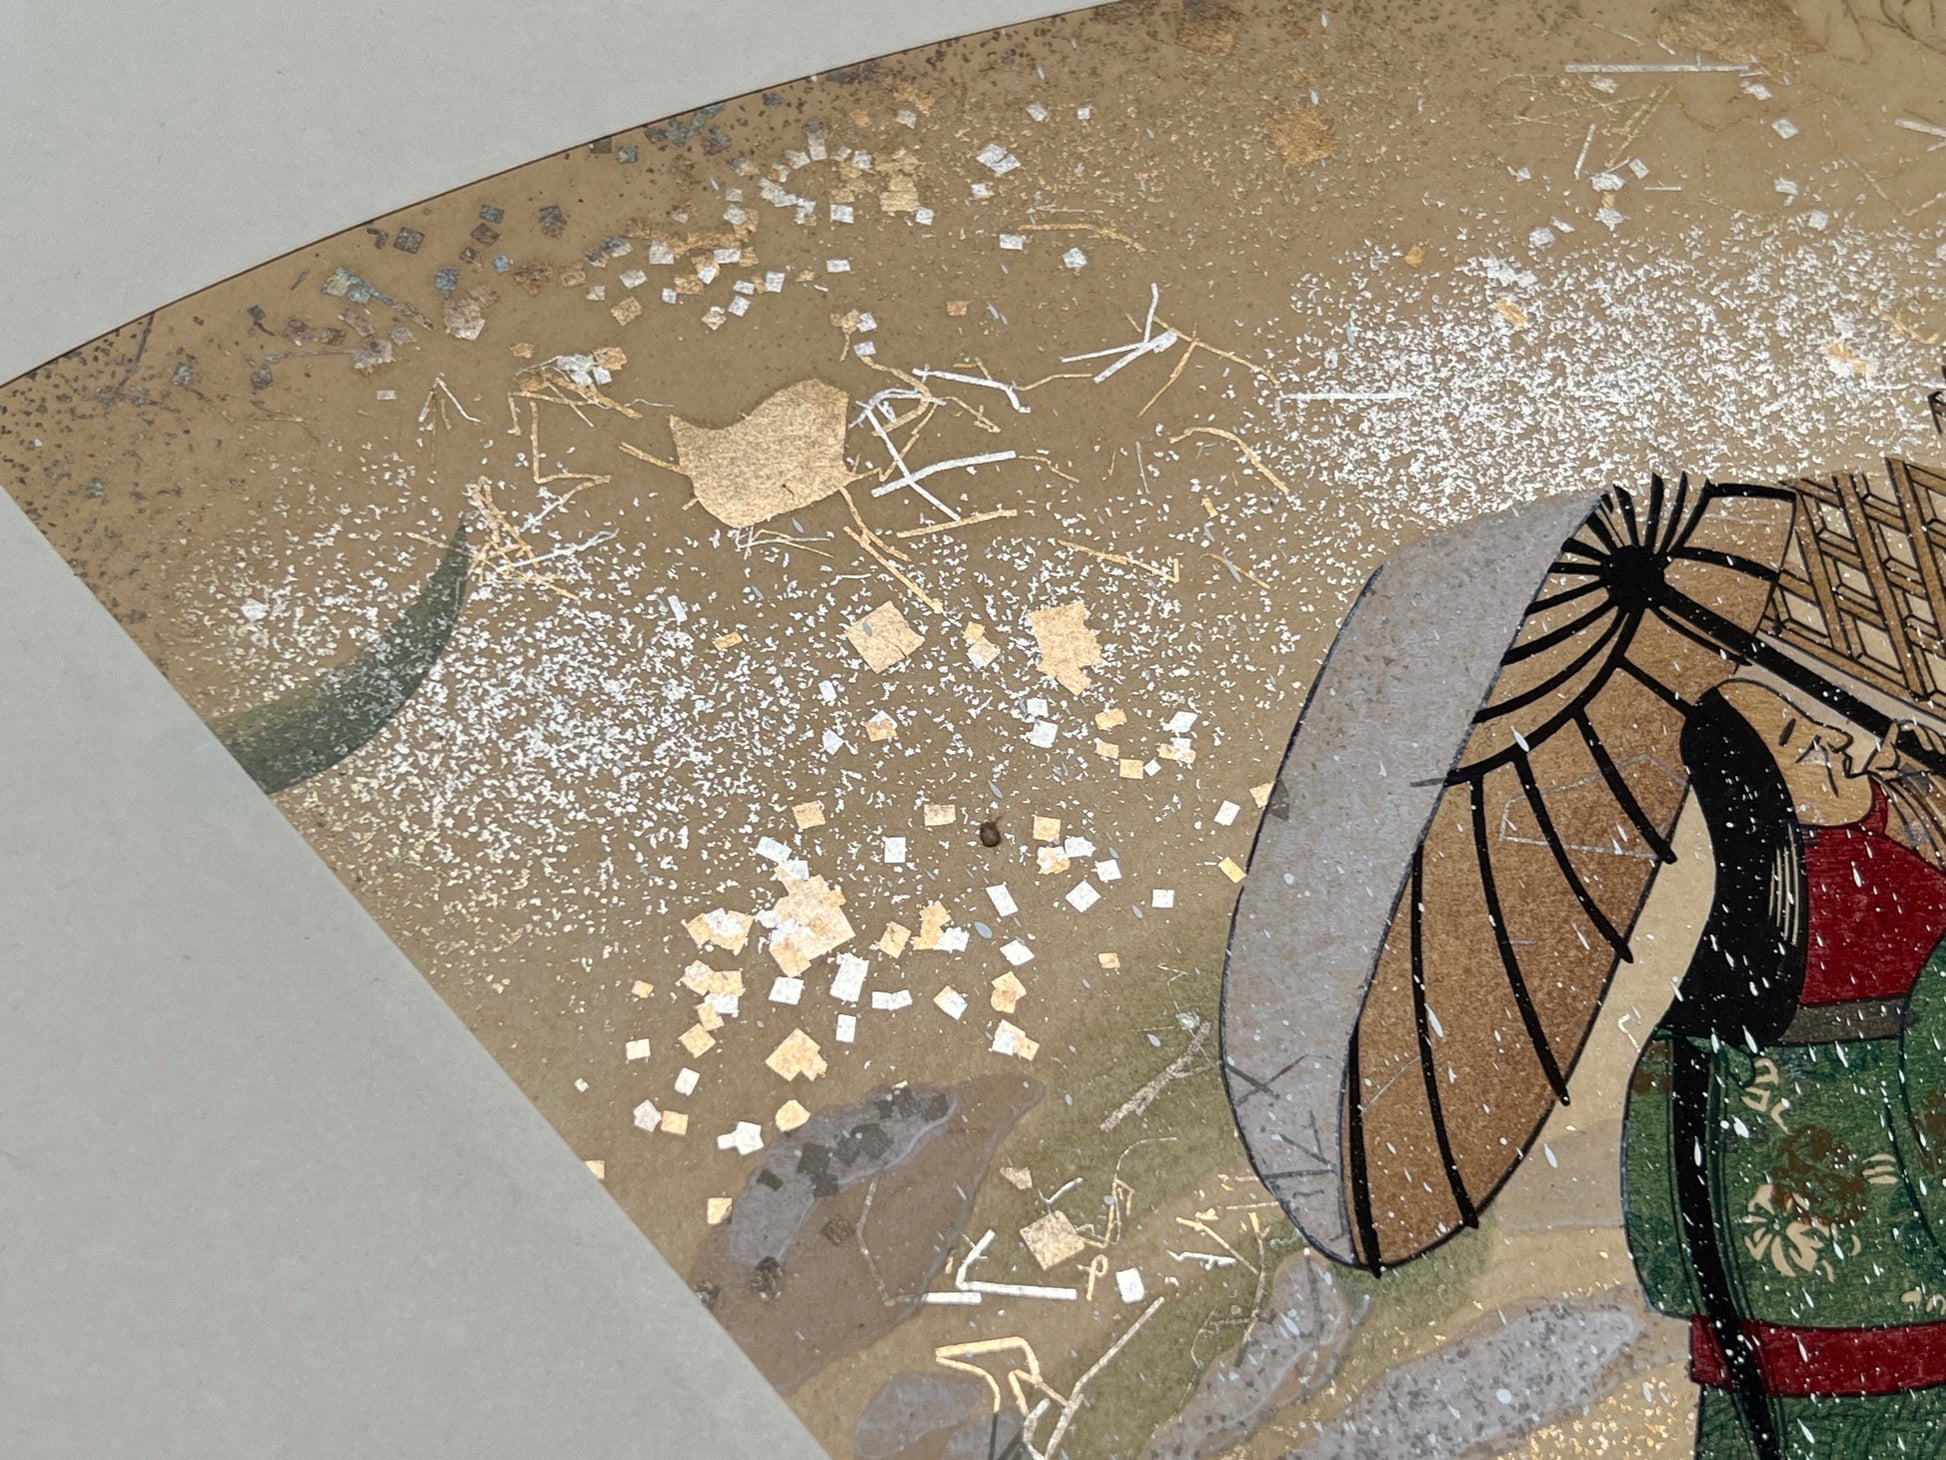 Estampe japonaise en forme d'éventail parsemée de fragments d'or et d'argent, matin neigeux, coin supérieur gauche, neige, fragments scintillants, vieille femme sous une ombrelle.